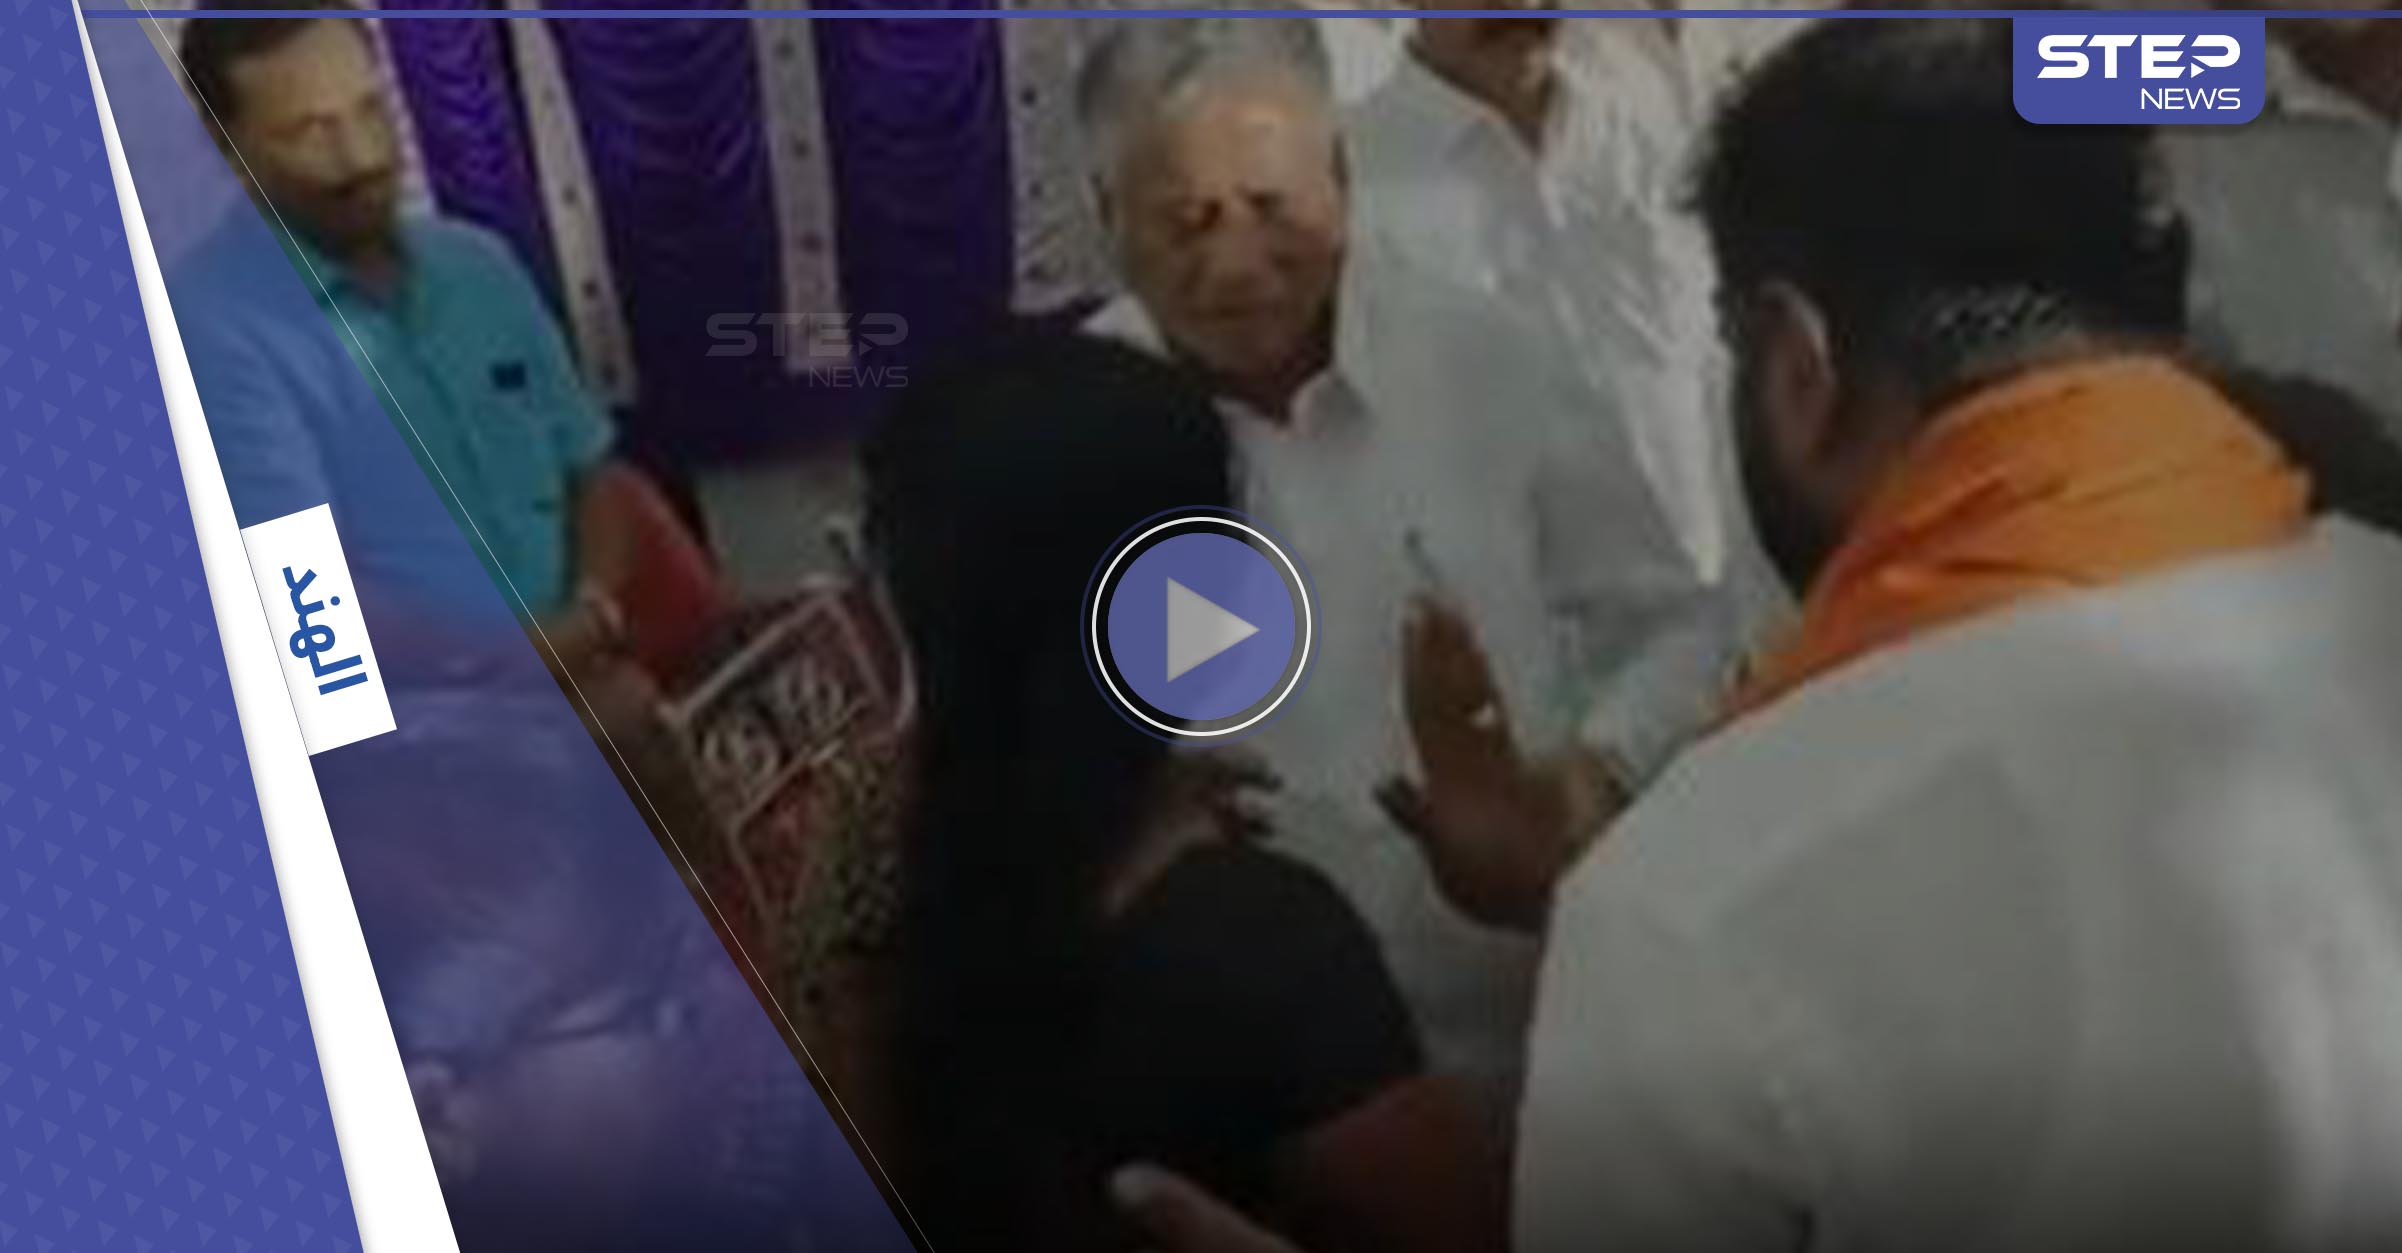 بالفيديو|| وزير هندي يعتدي على امرأة أمام الملأ واستغراب من ردة فعلها